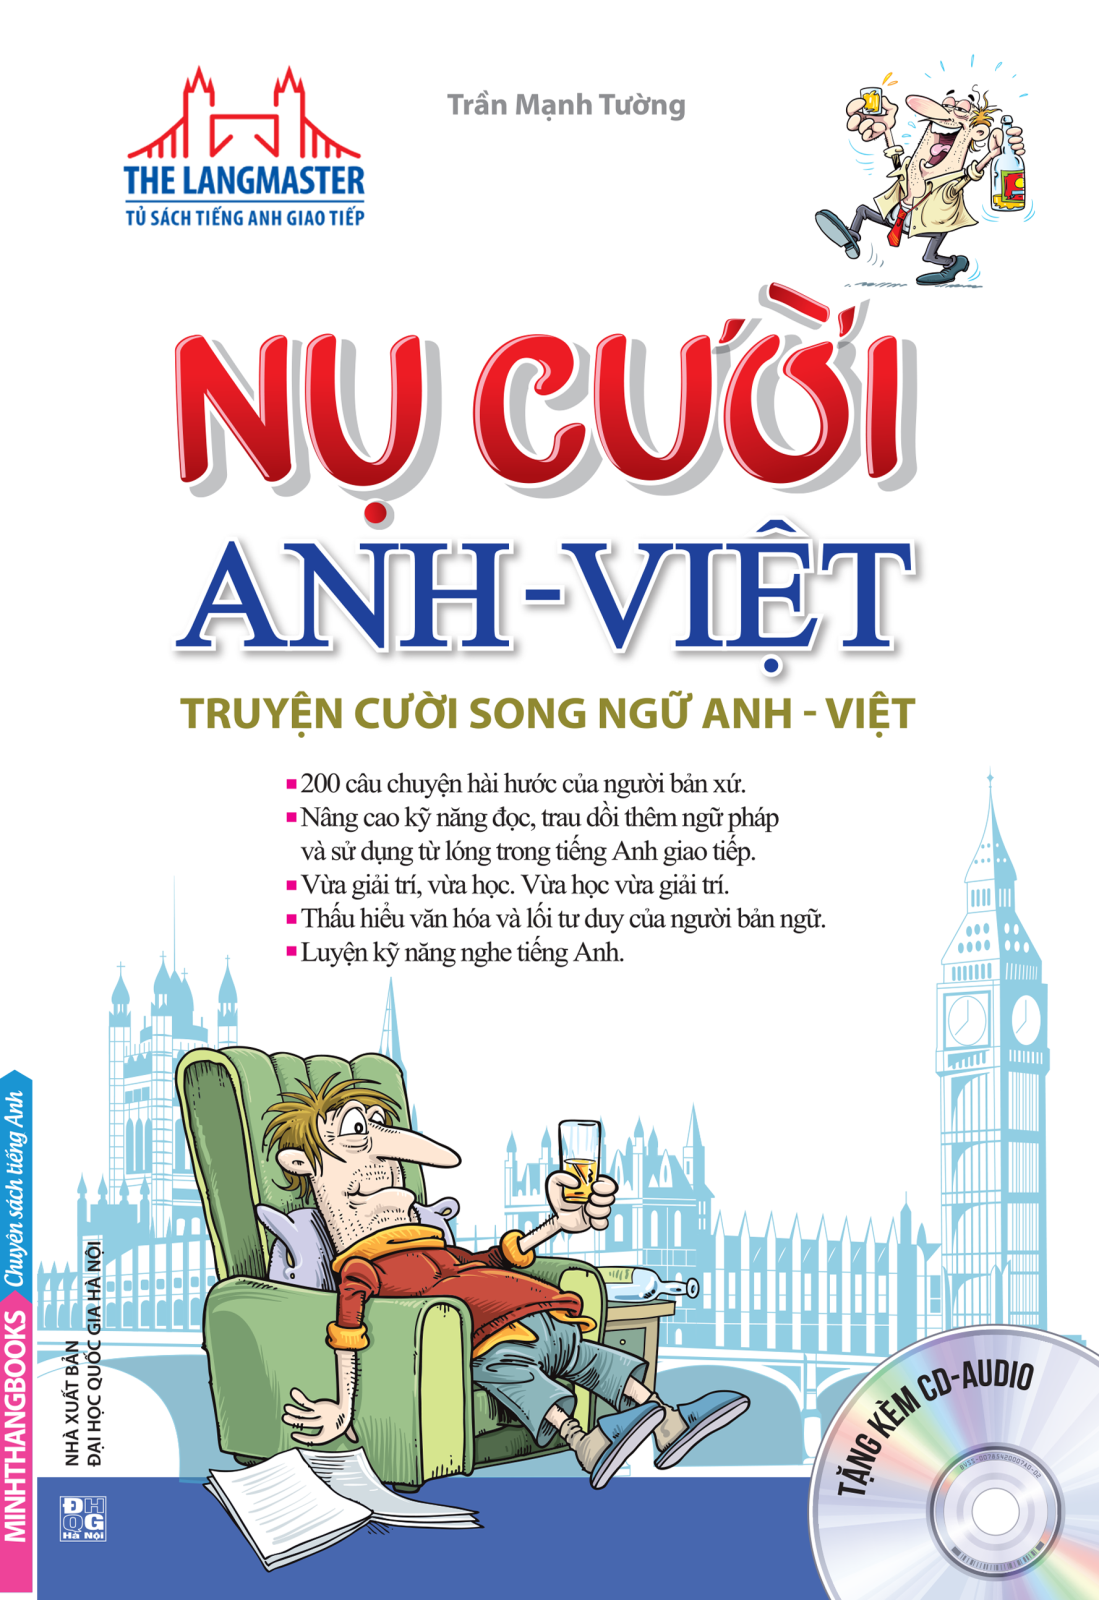 The Langmaster - Nụ Cười Anh - Việt Truyện Cười Song Ngữ Anh - Việt (Bìa Mềm)